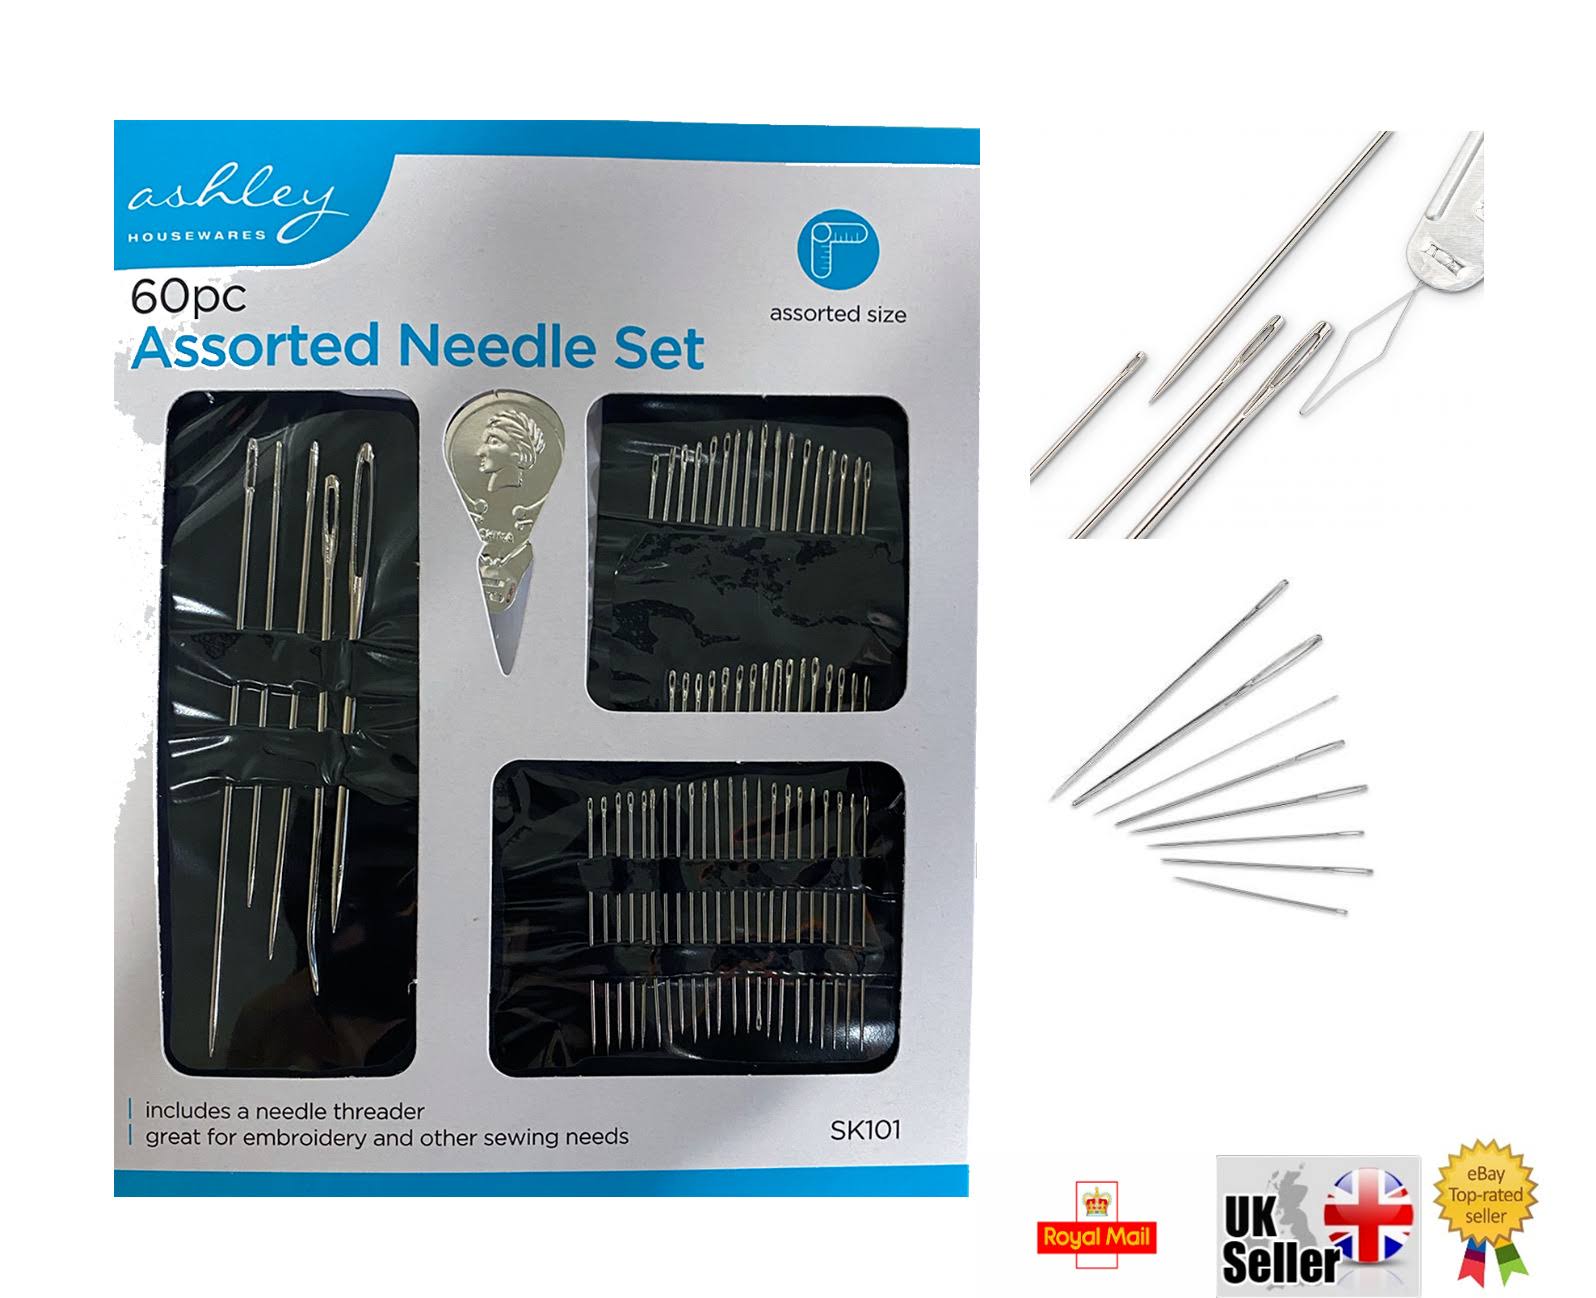 Ashley 60pc Assorted Needle Set